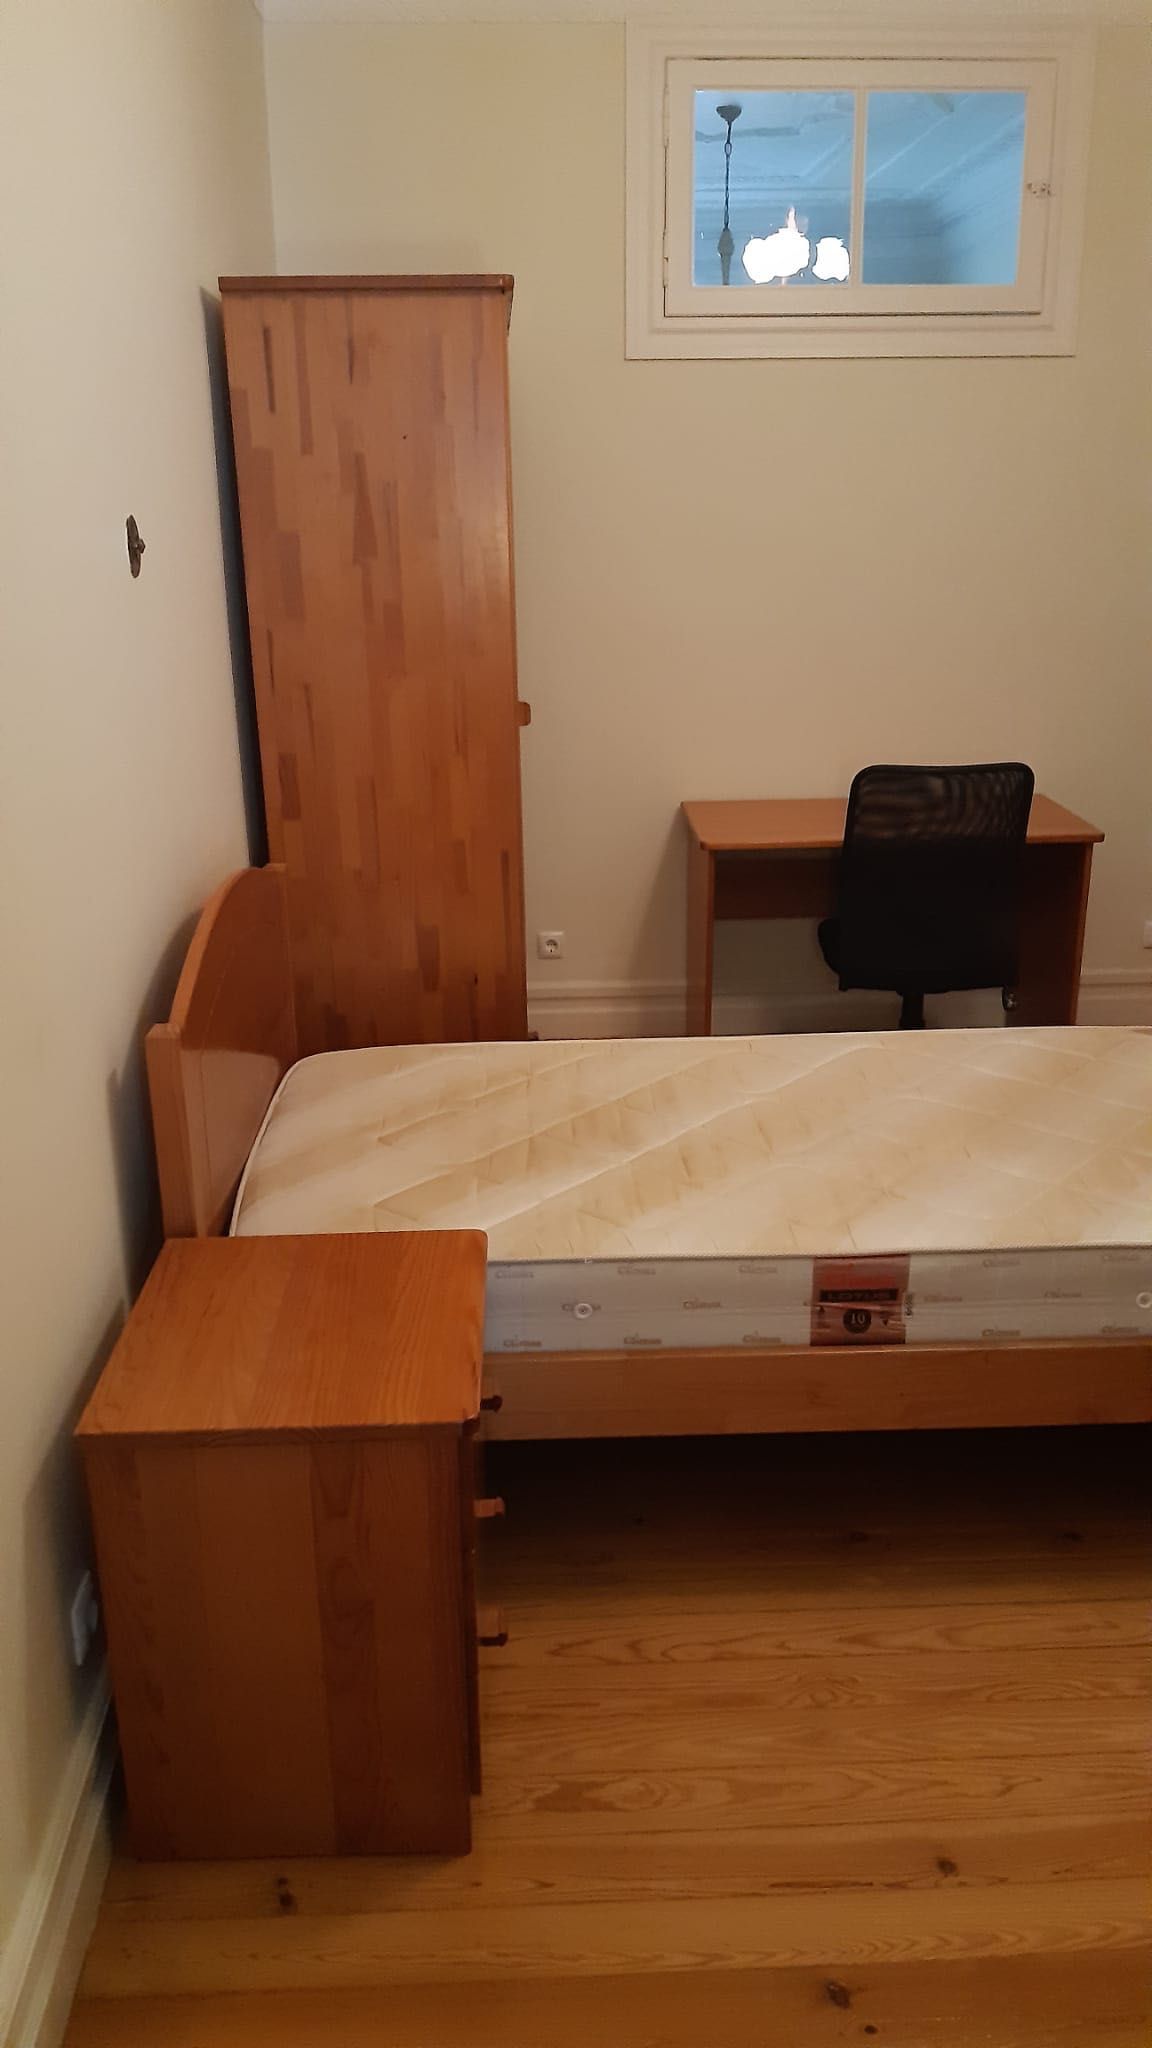 Mobília completa de quarto de solteiro - em madeira